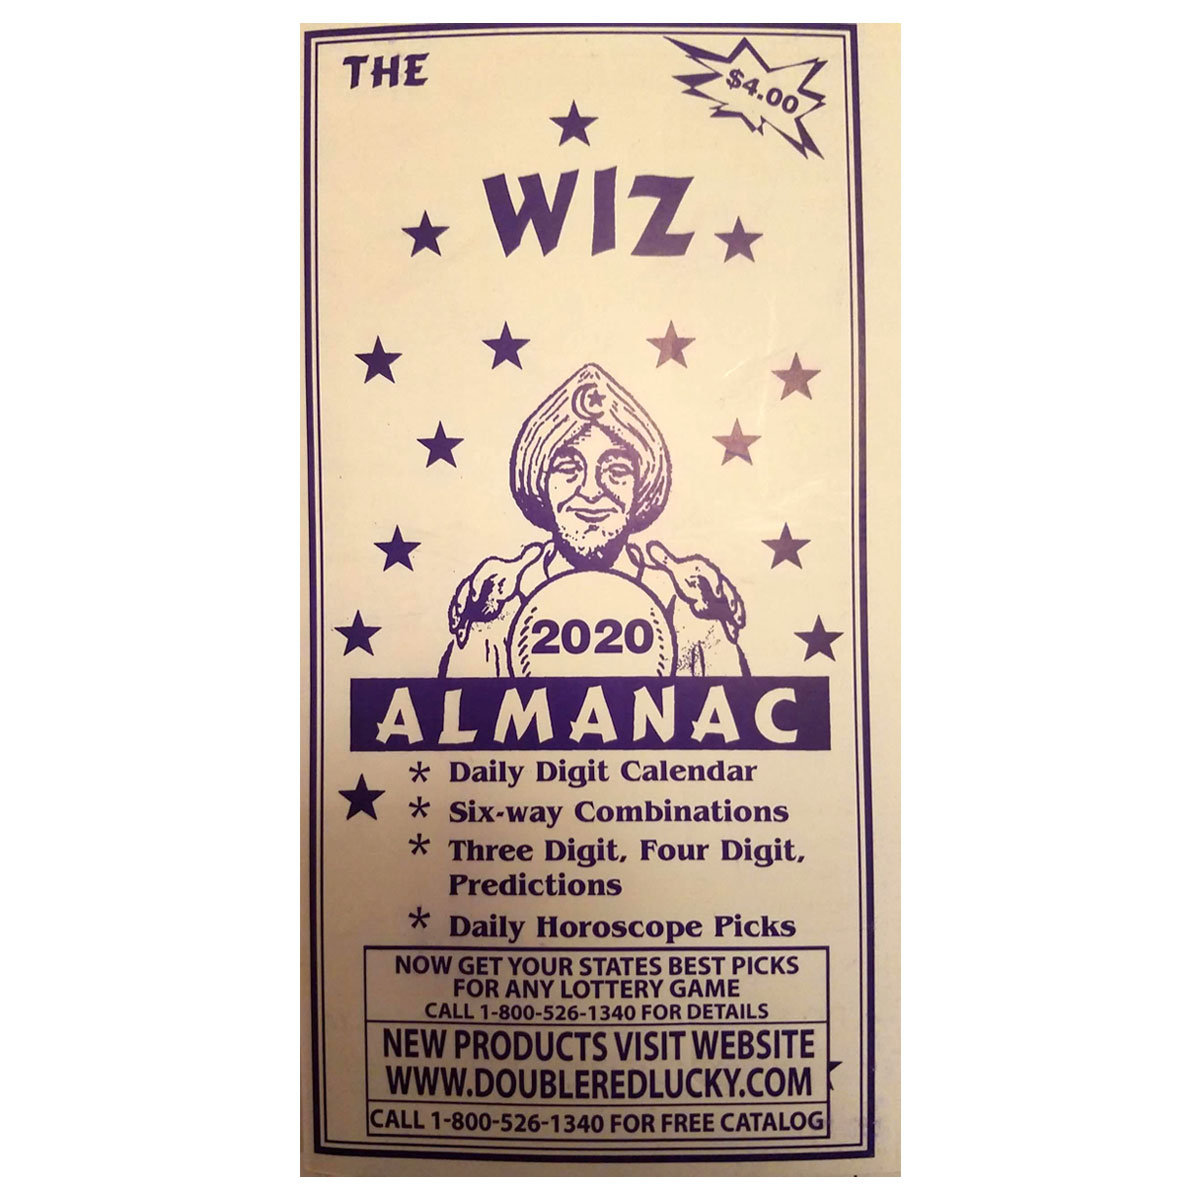 The Wiz Almanac